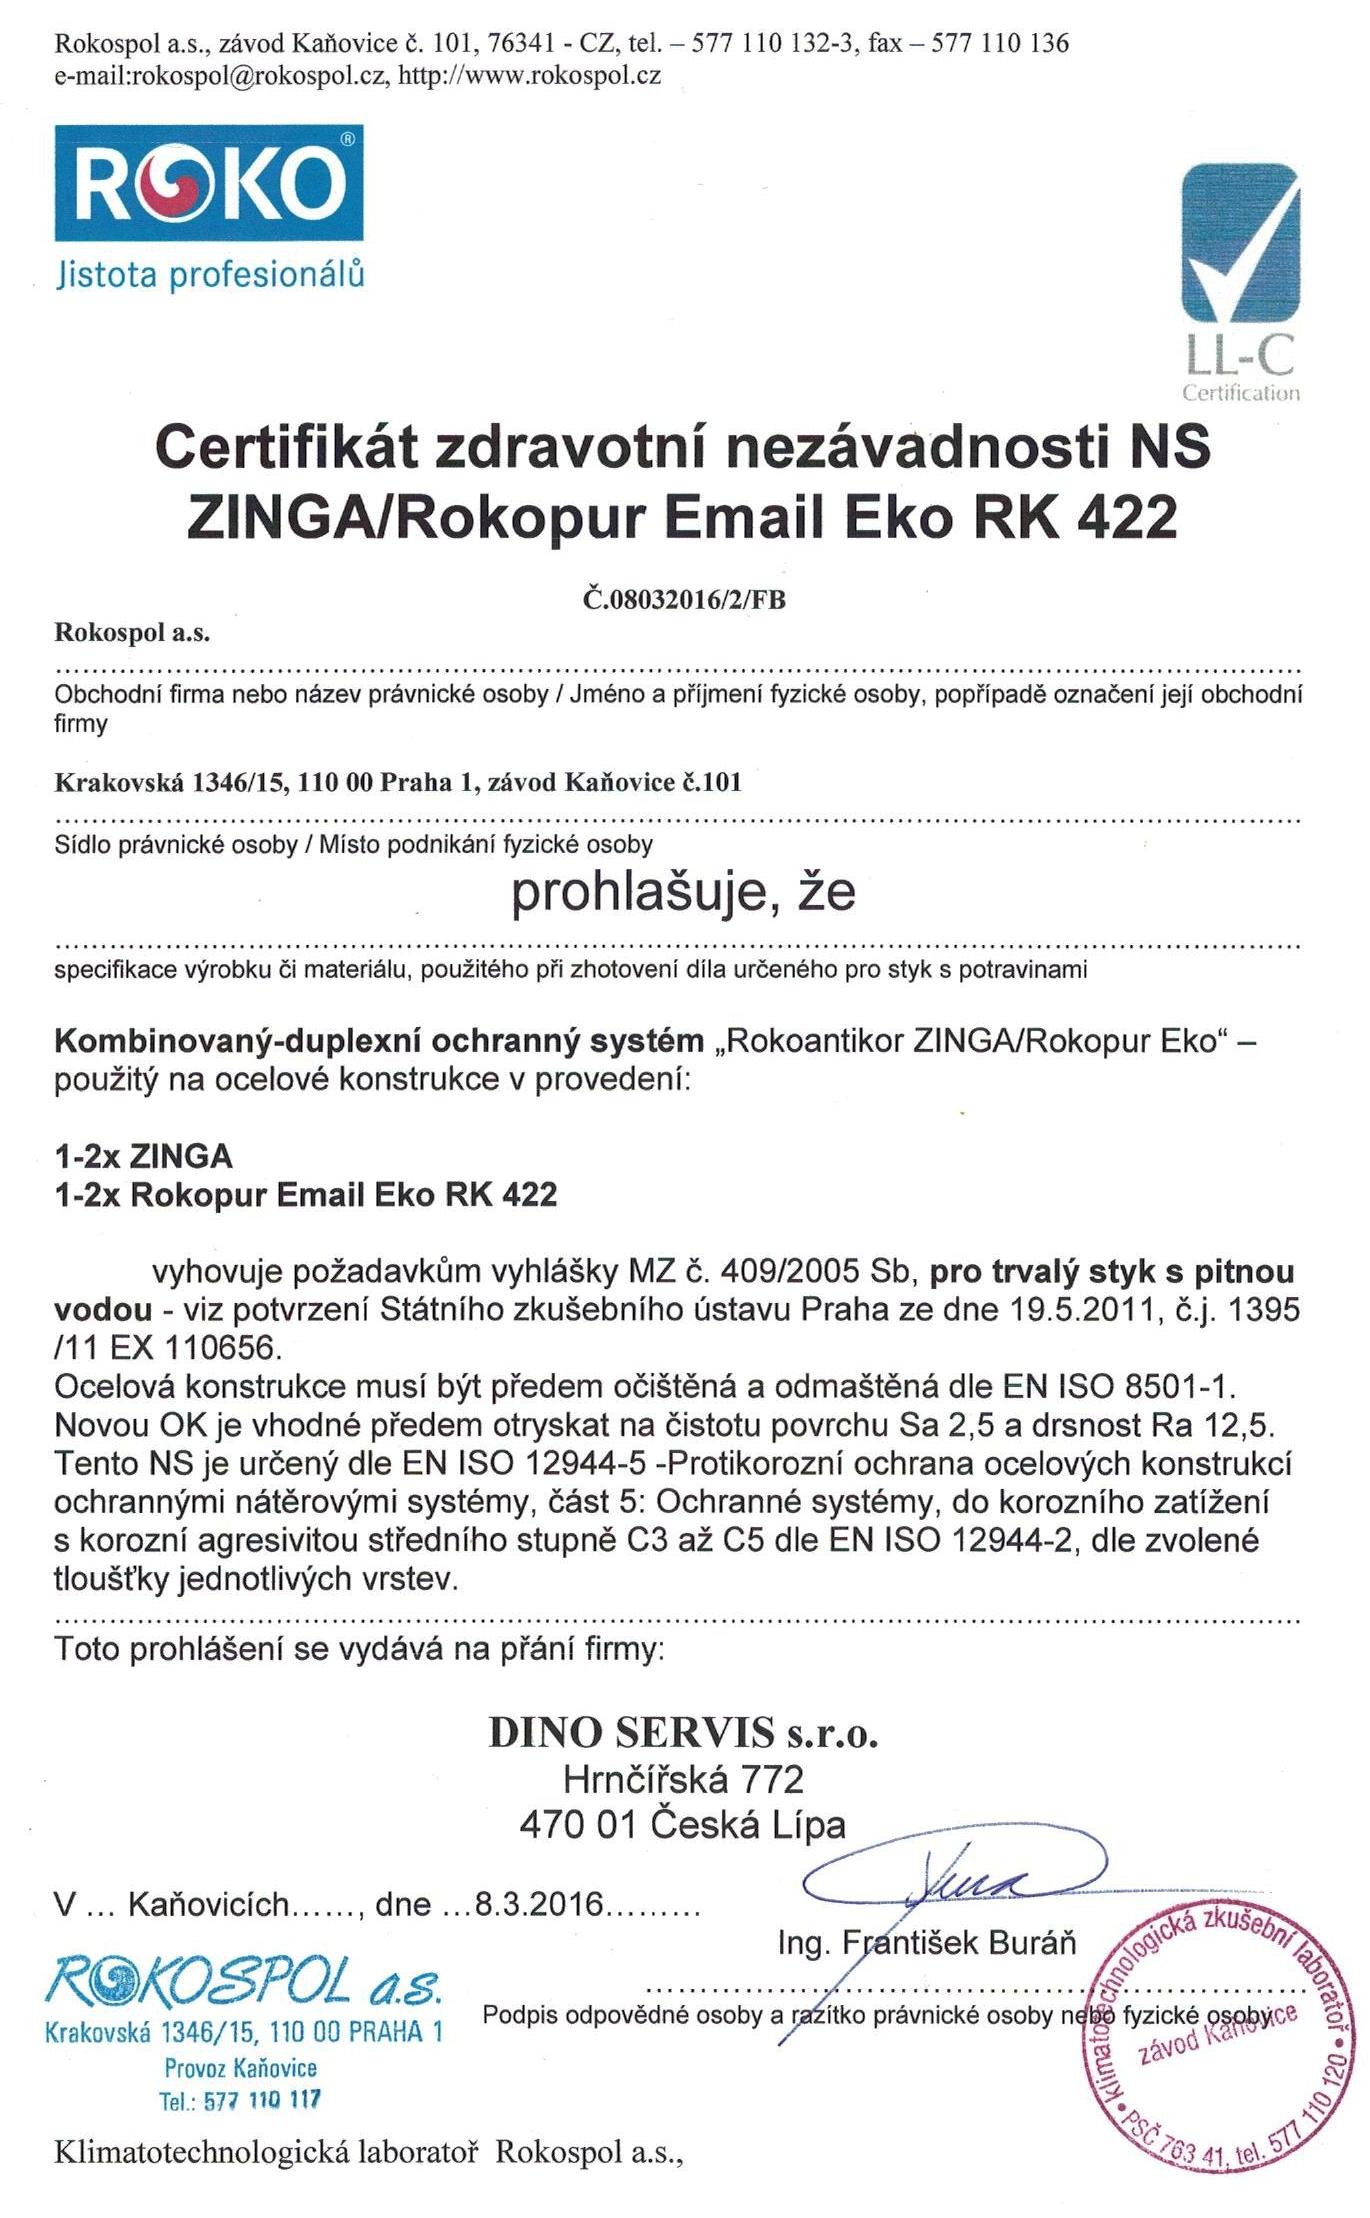 Certifikát pro Zinga a RK 422 pro DINO_uprav